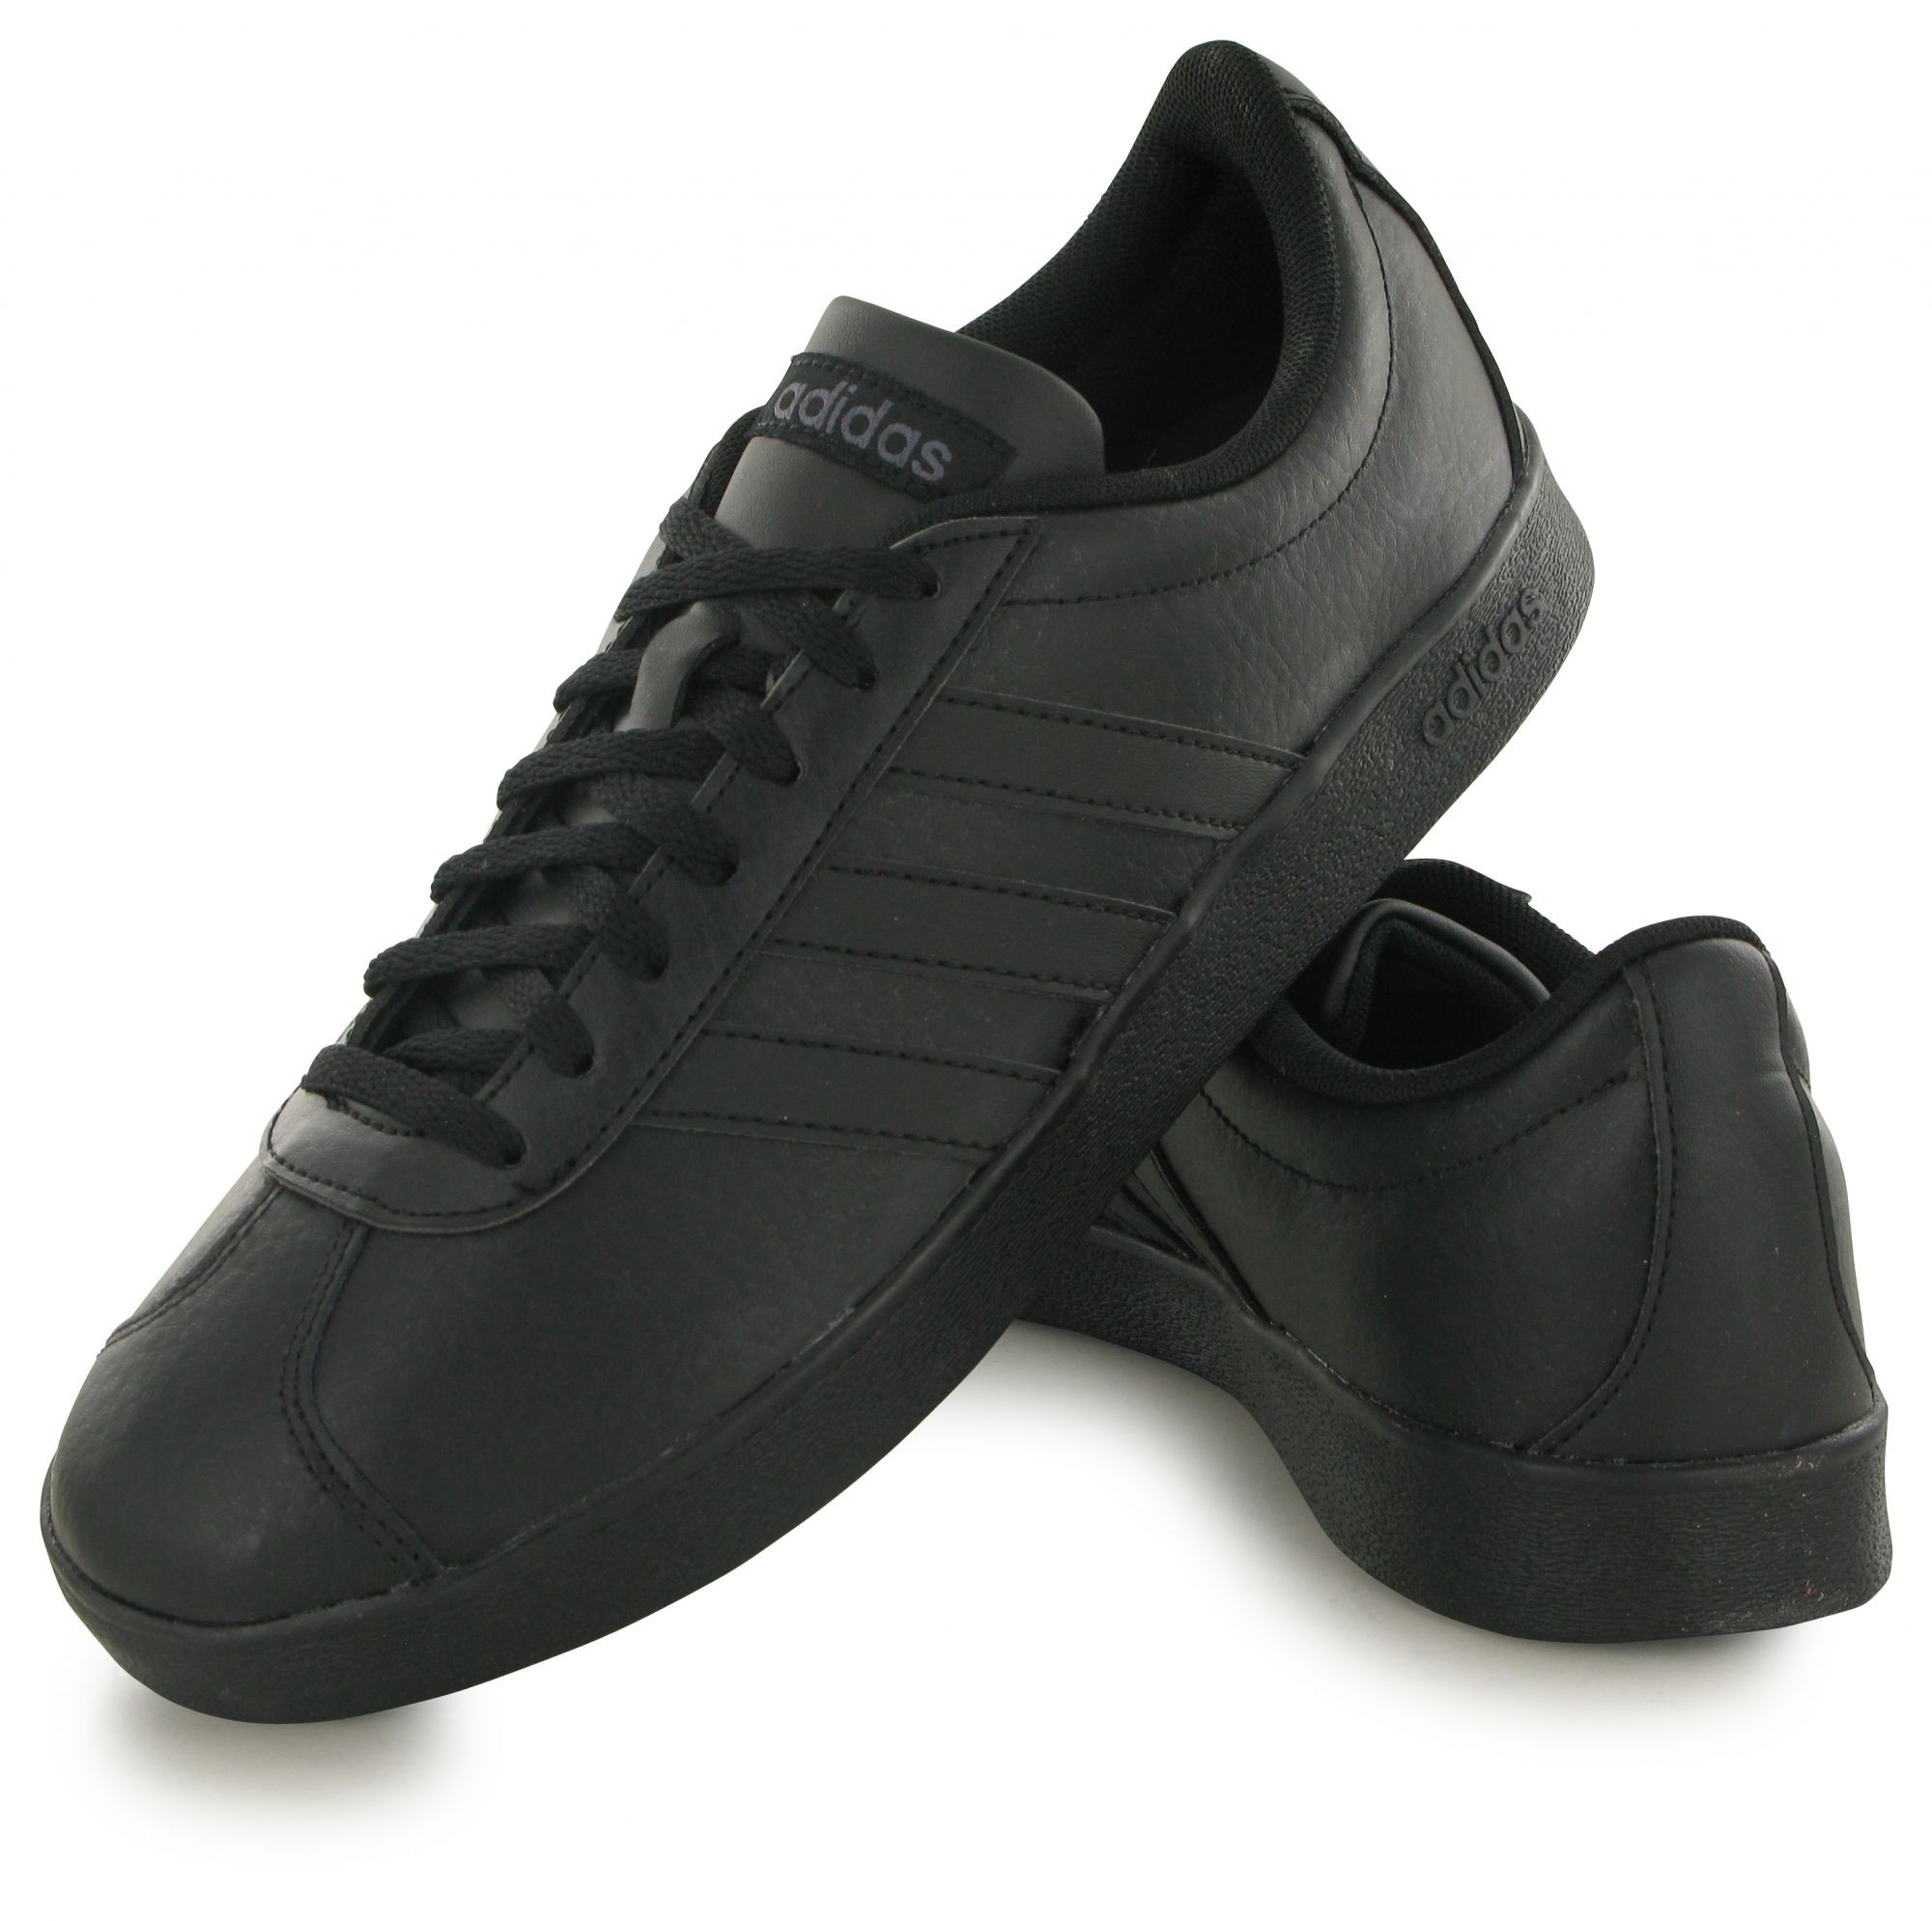 Купить адидас кожаные мужские. Adidas VL Court 2.0 Black. VL Court 2.0 adidas мужские Black. VL Court 2.0 adidas чёрные кожаные. Adidas VL Court 2.0 кожа.